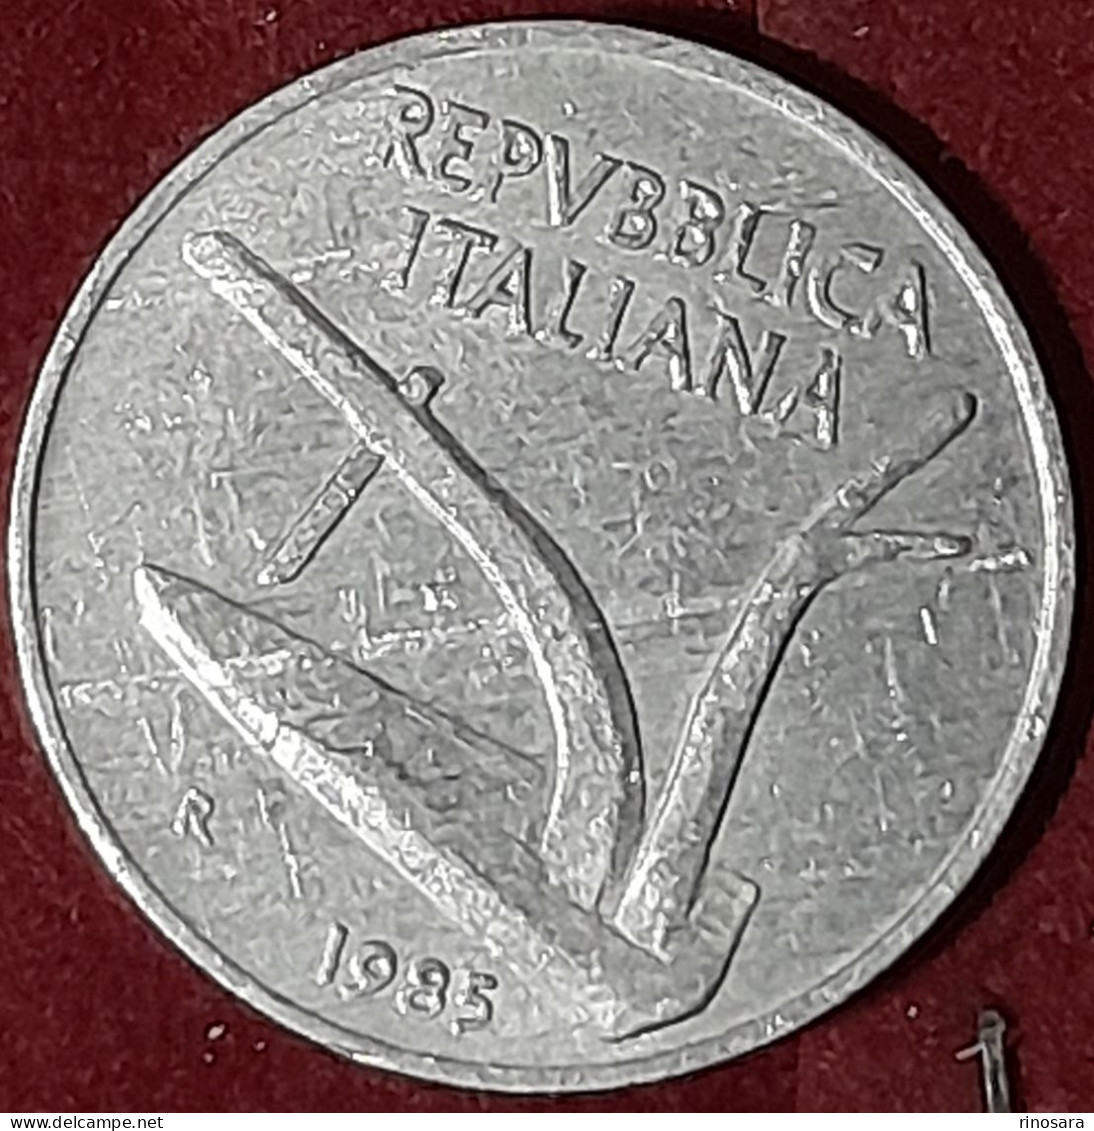 Errore Di Conio 10 Lire 1985 Repubblica Italiana - Errors And Oddities